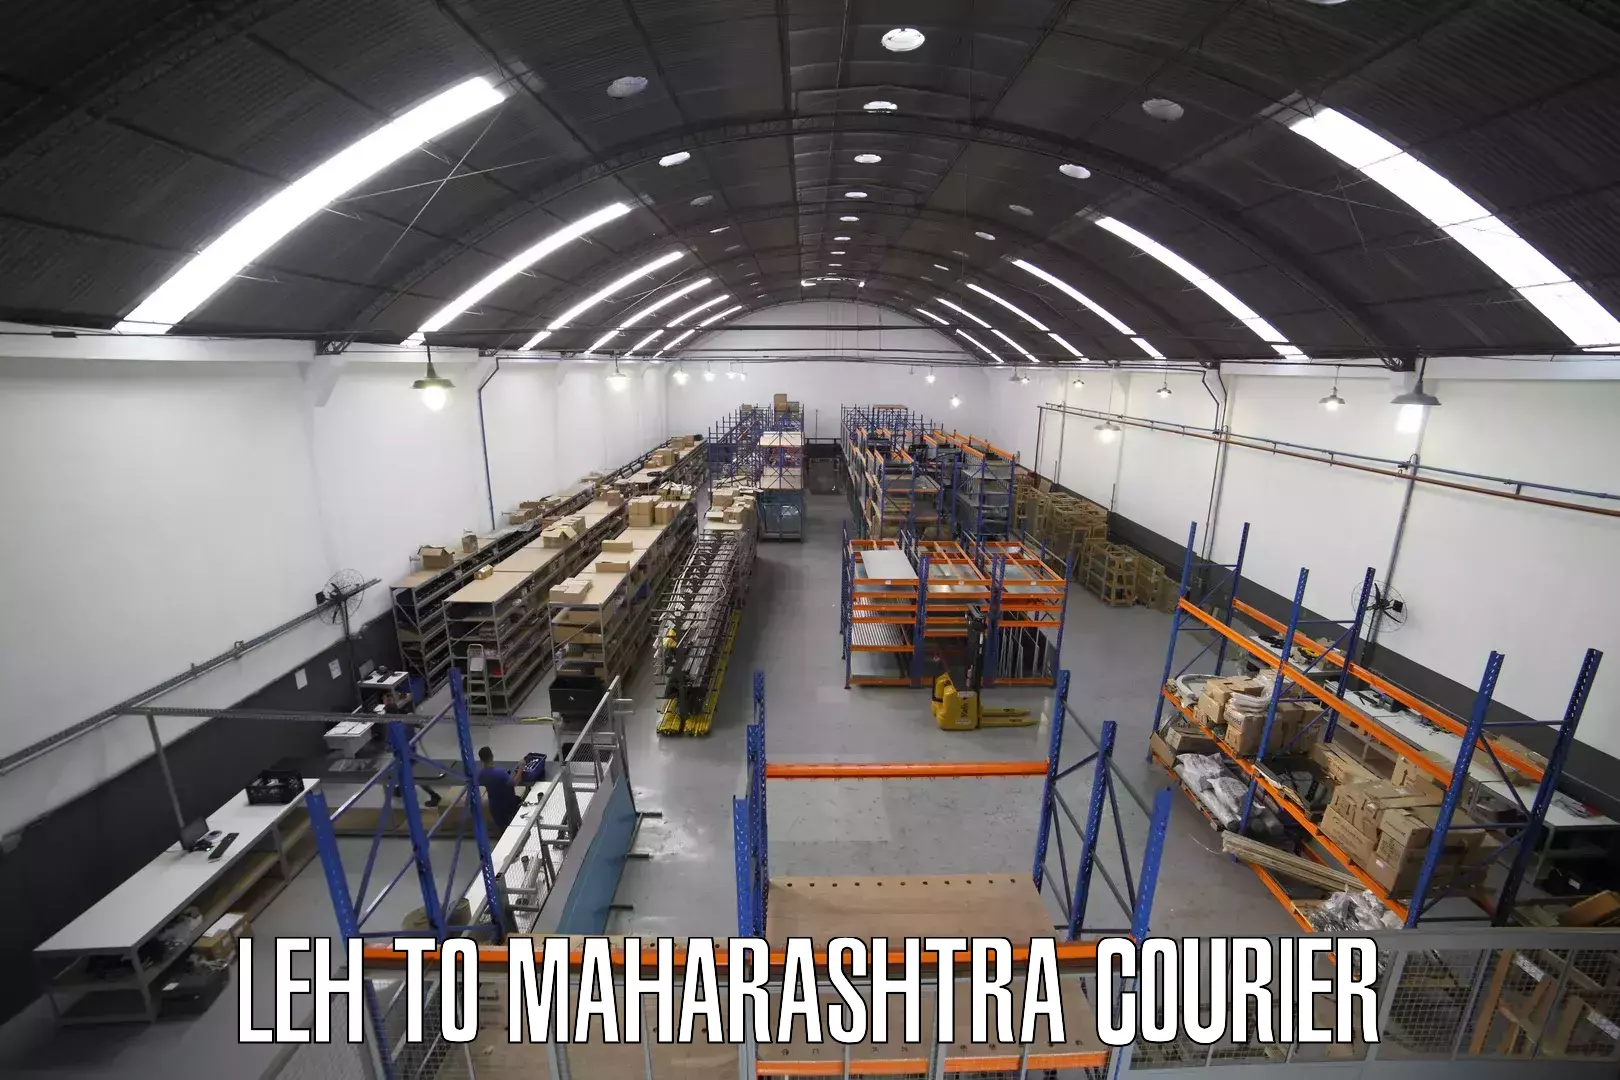 High-capacity parcel service Leh to Maharashtra